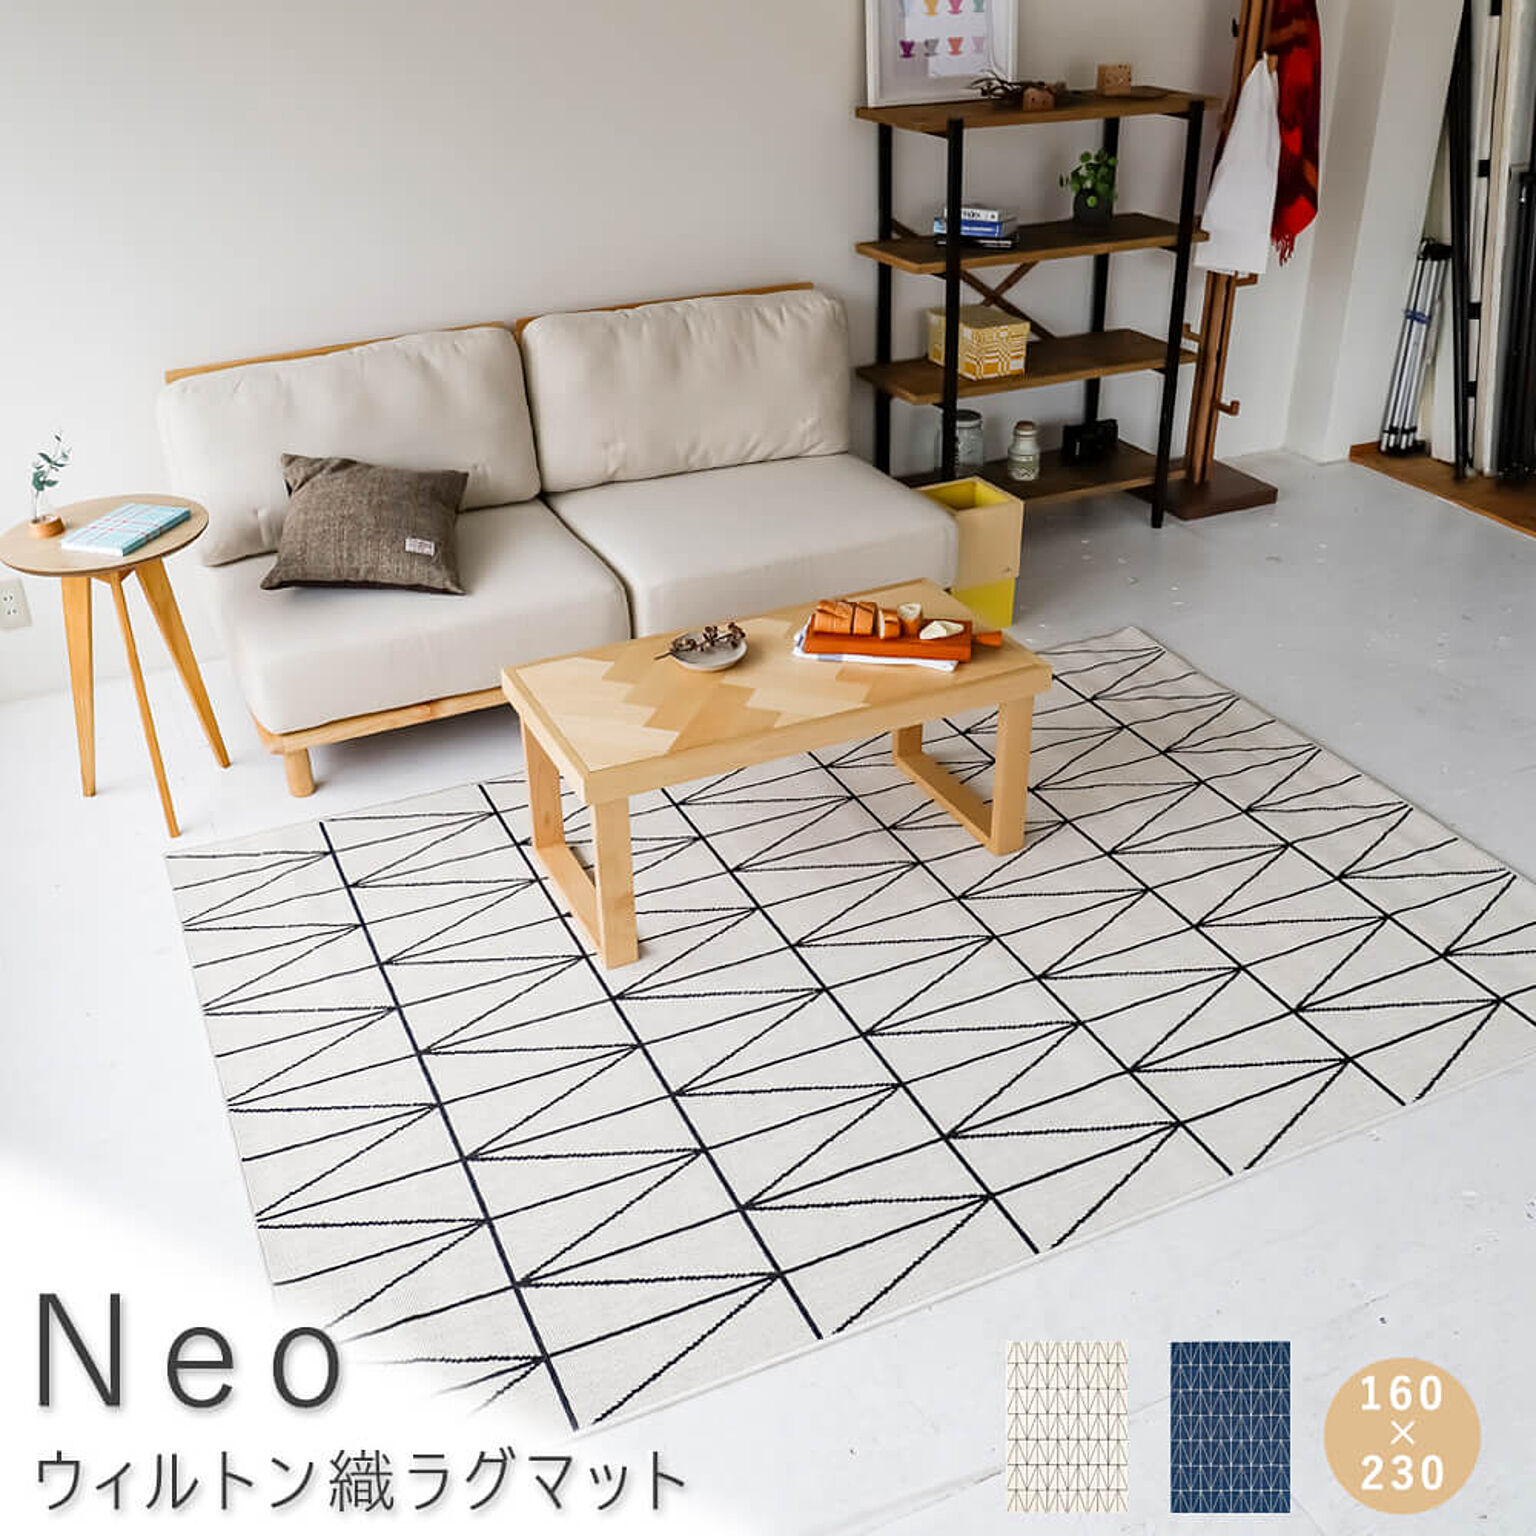 Neo ウィルトン織 ラグマット 160cm×230cm ホワイト